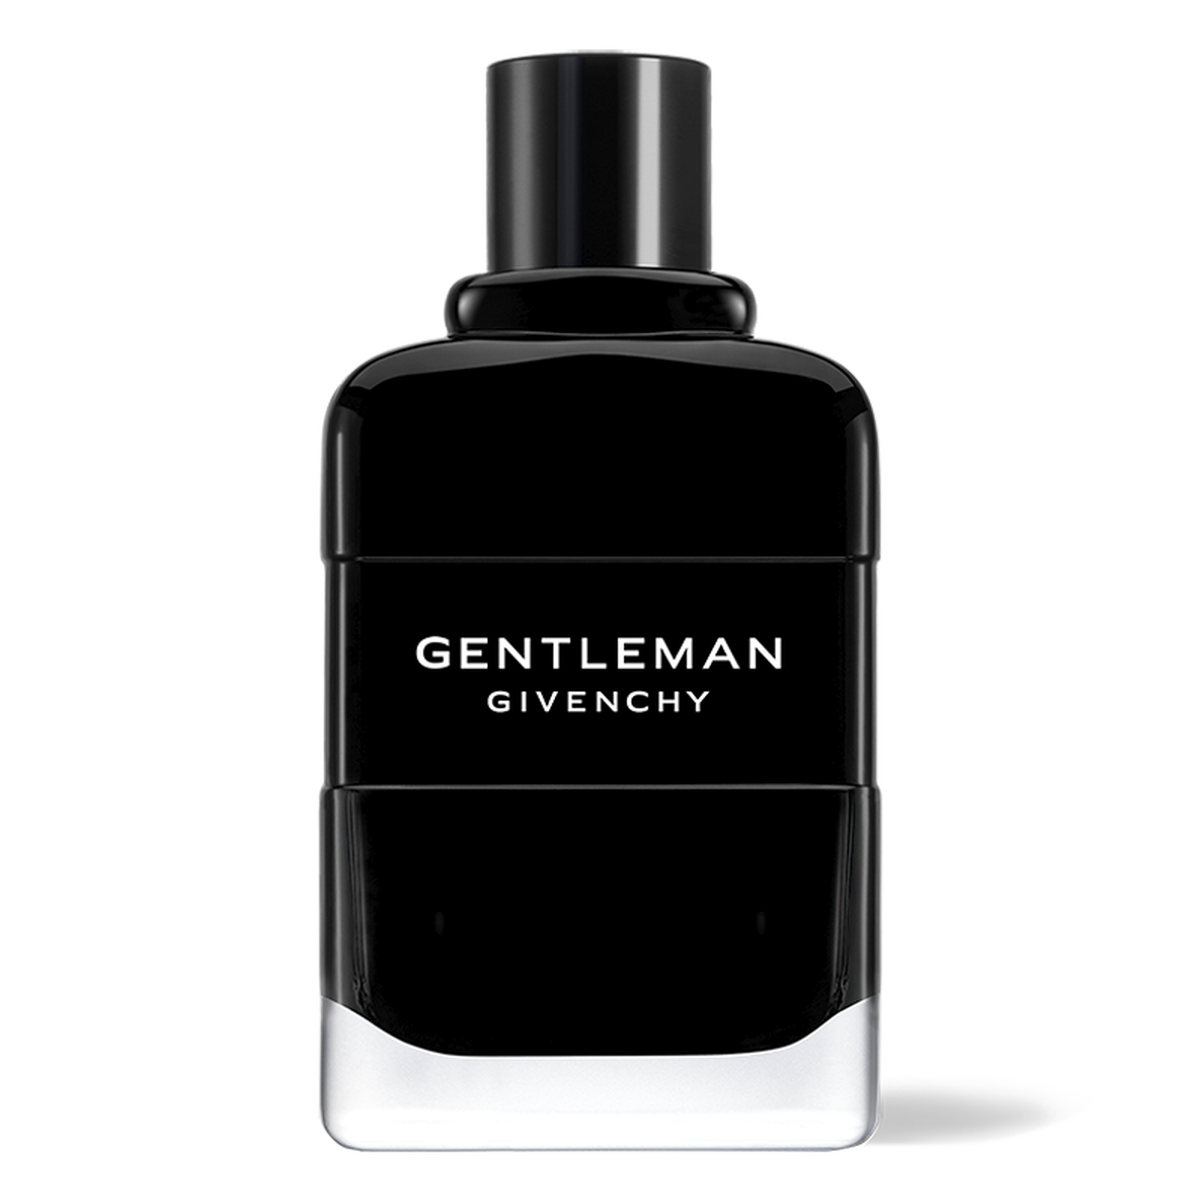 Gentleman Givenchy - Eau de parfum woody, floral